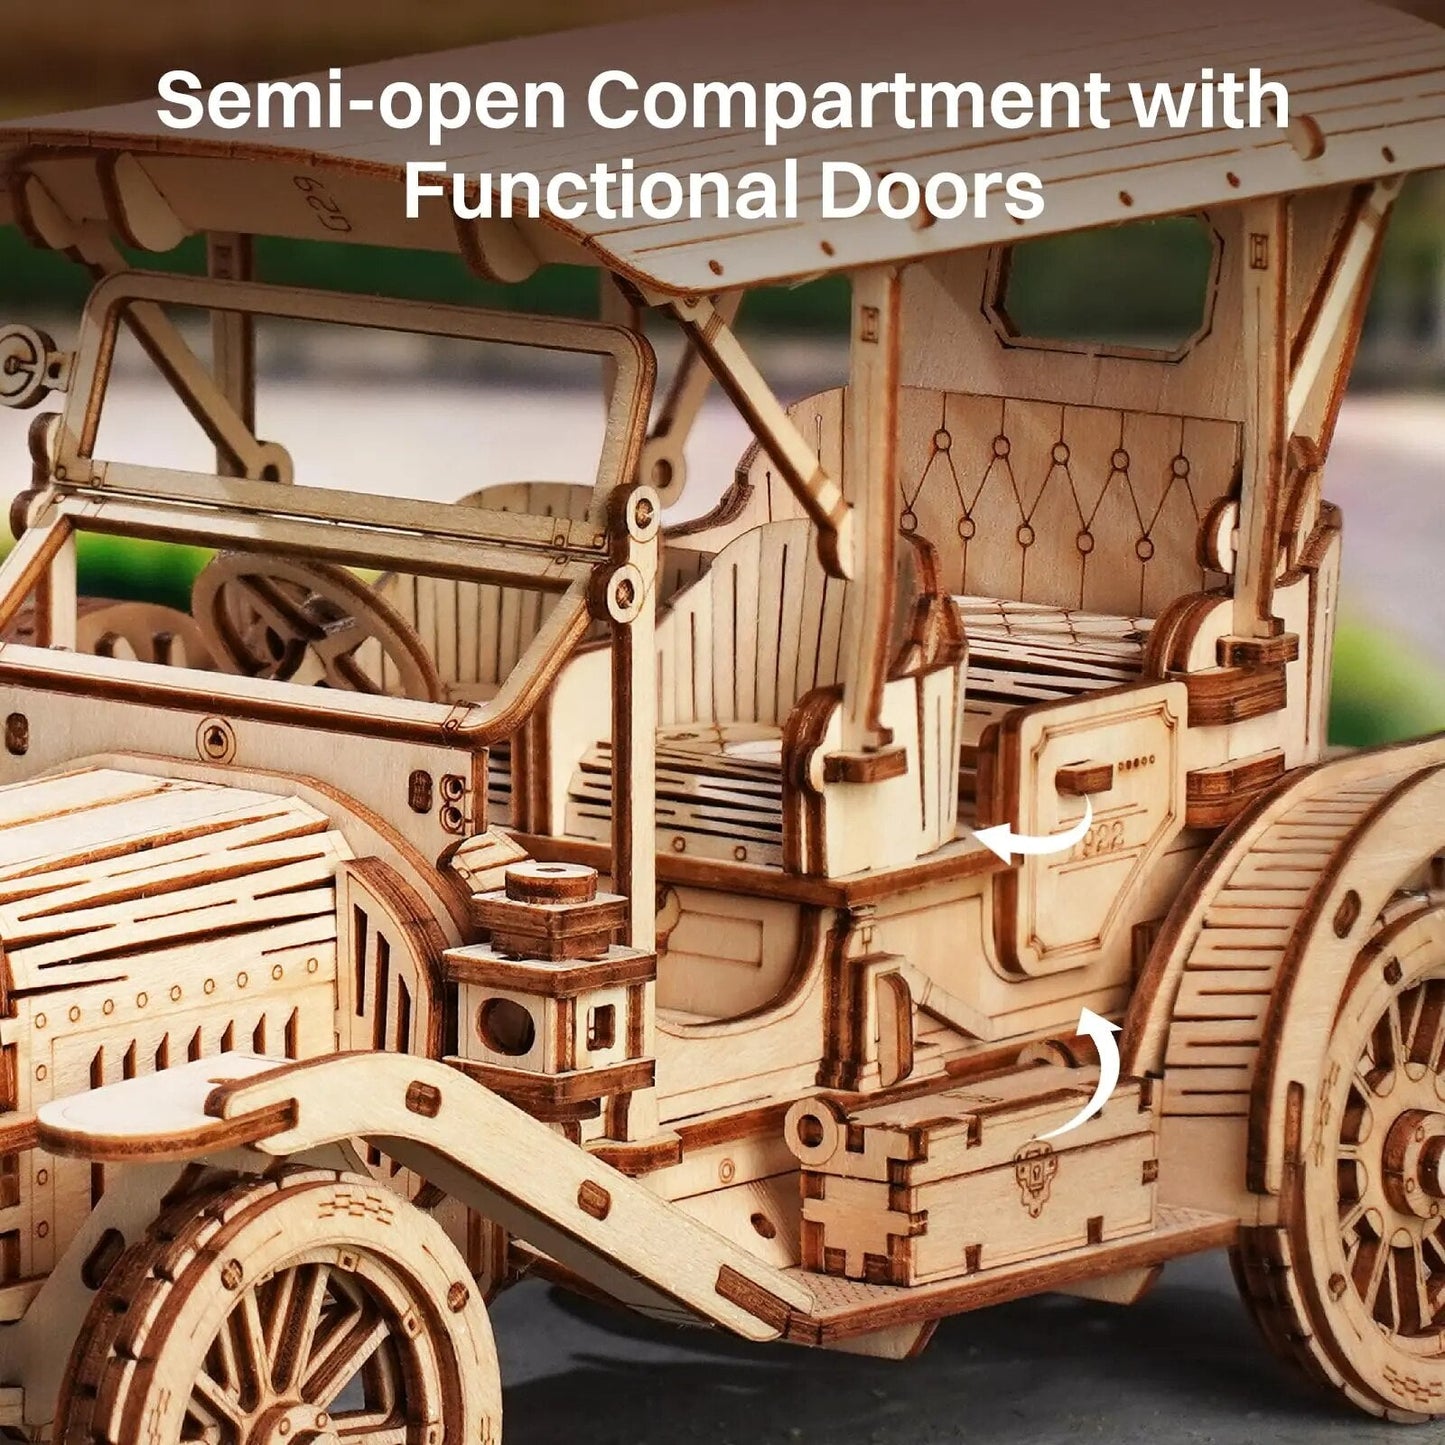 Vintage Retro Car 3D Wooden Puzzle - DIYative™